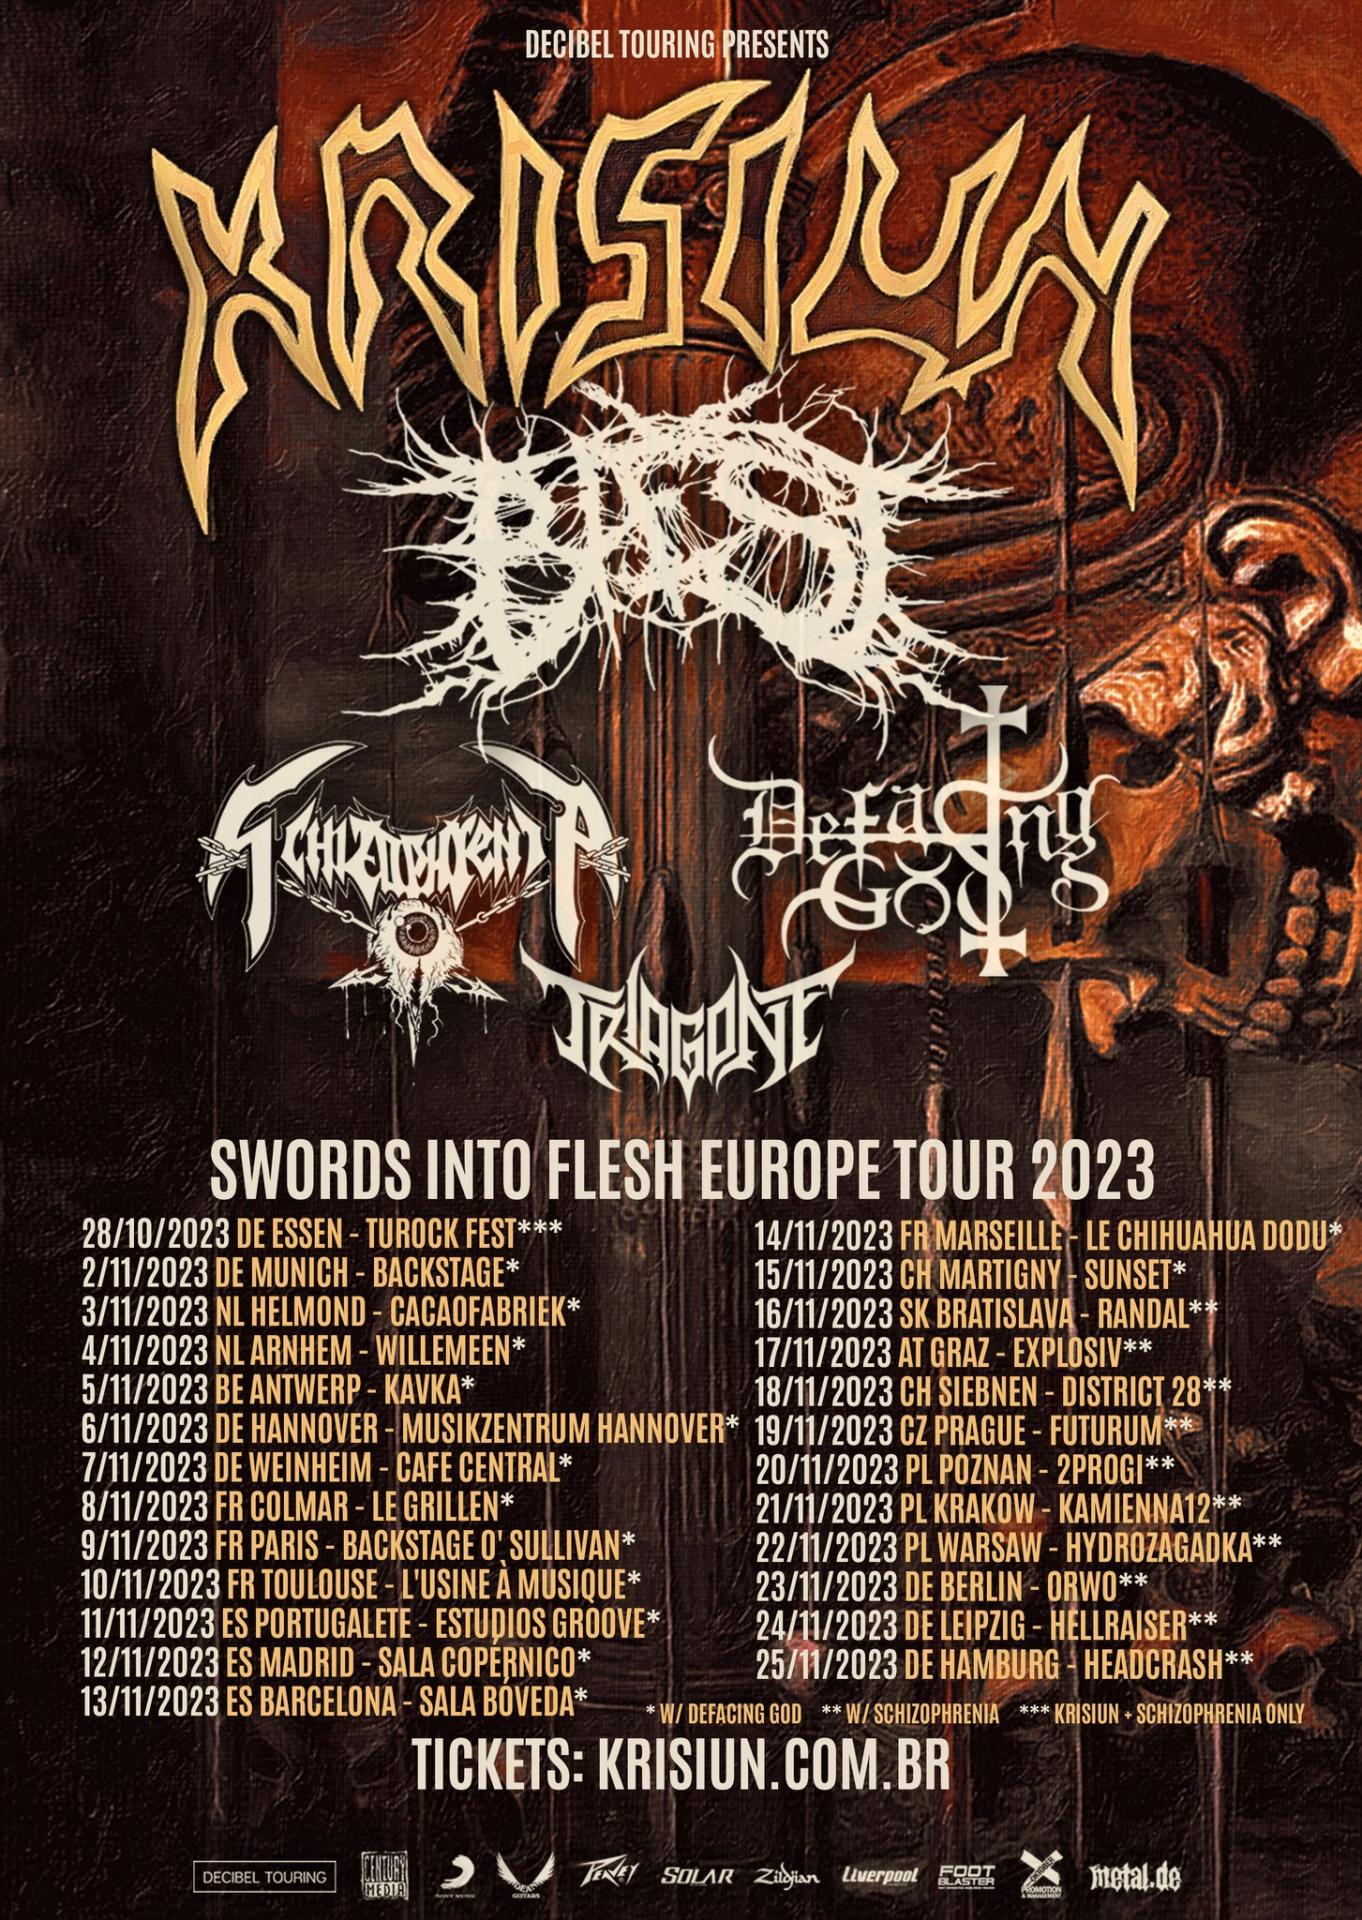 Swords into flesh europe tour 2023